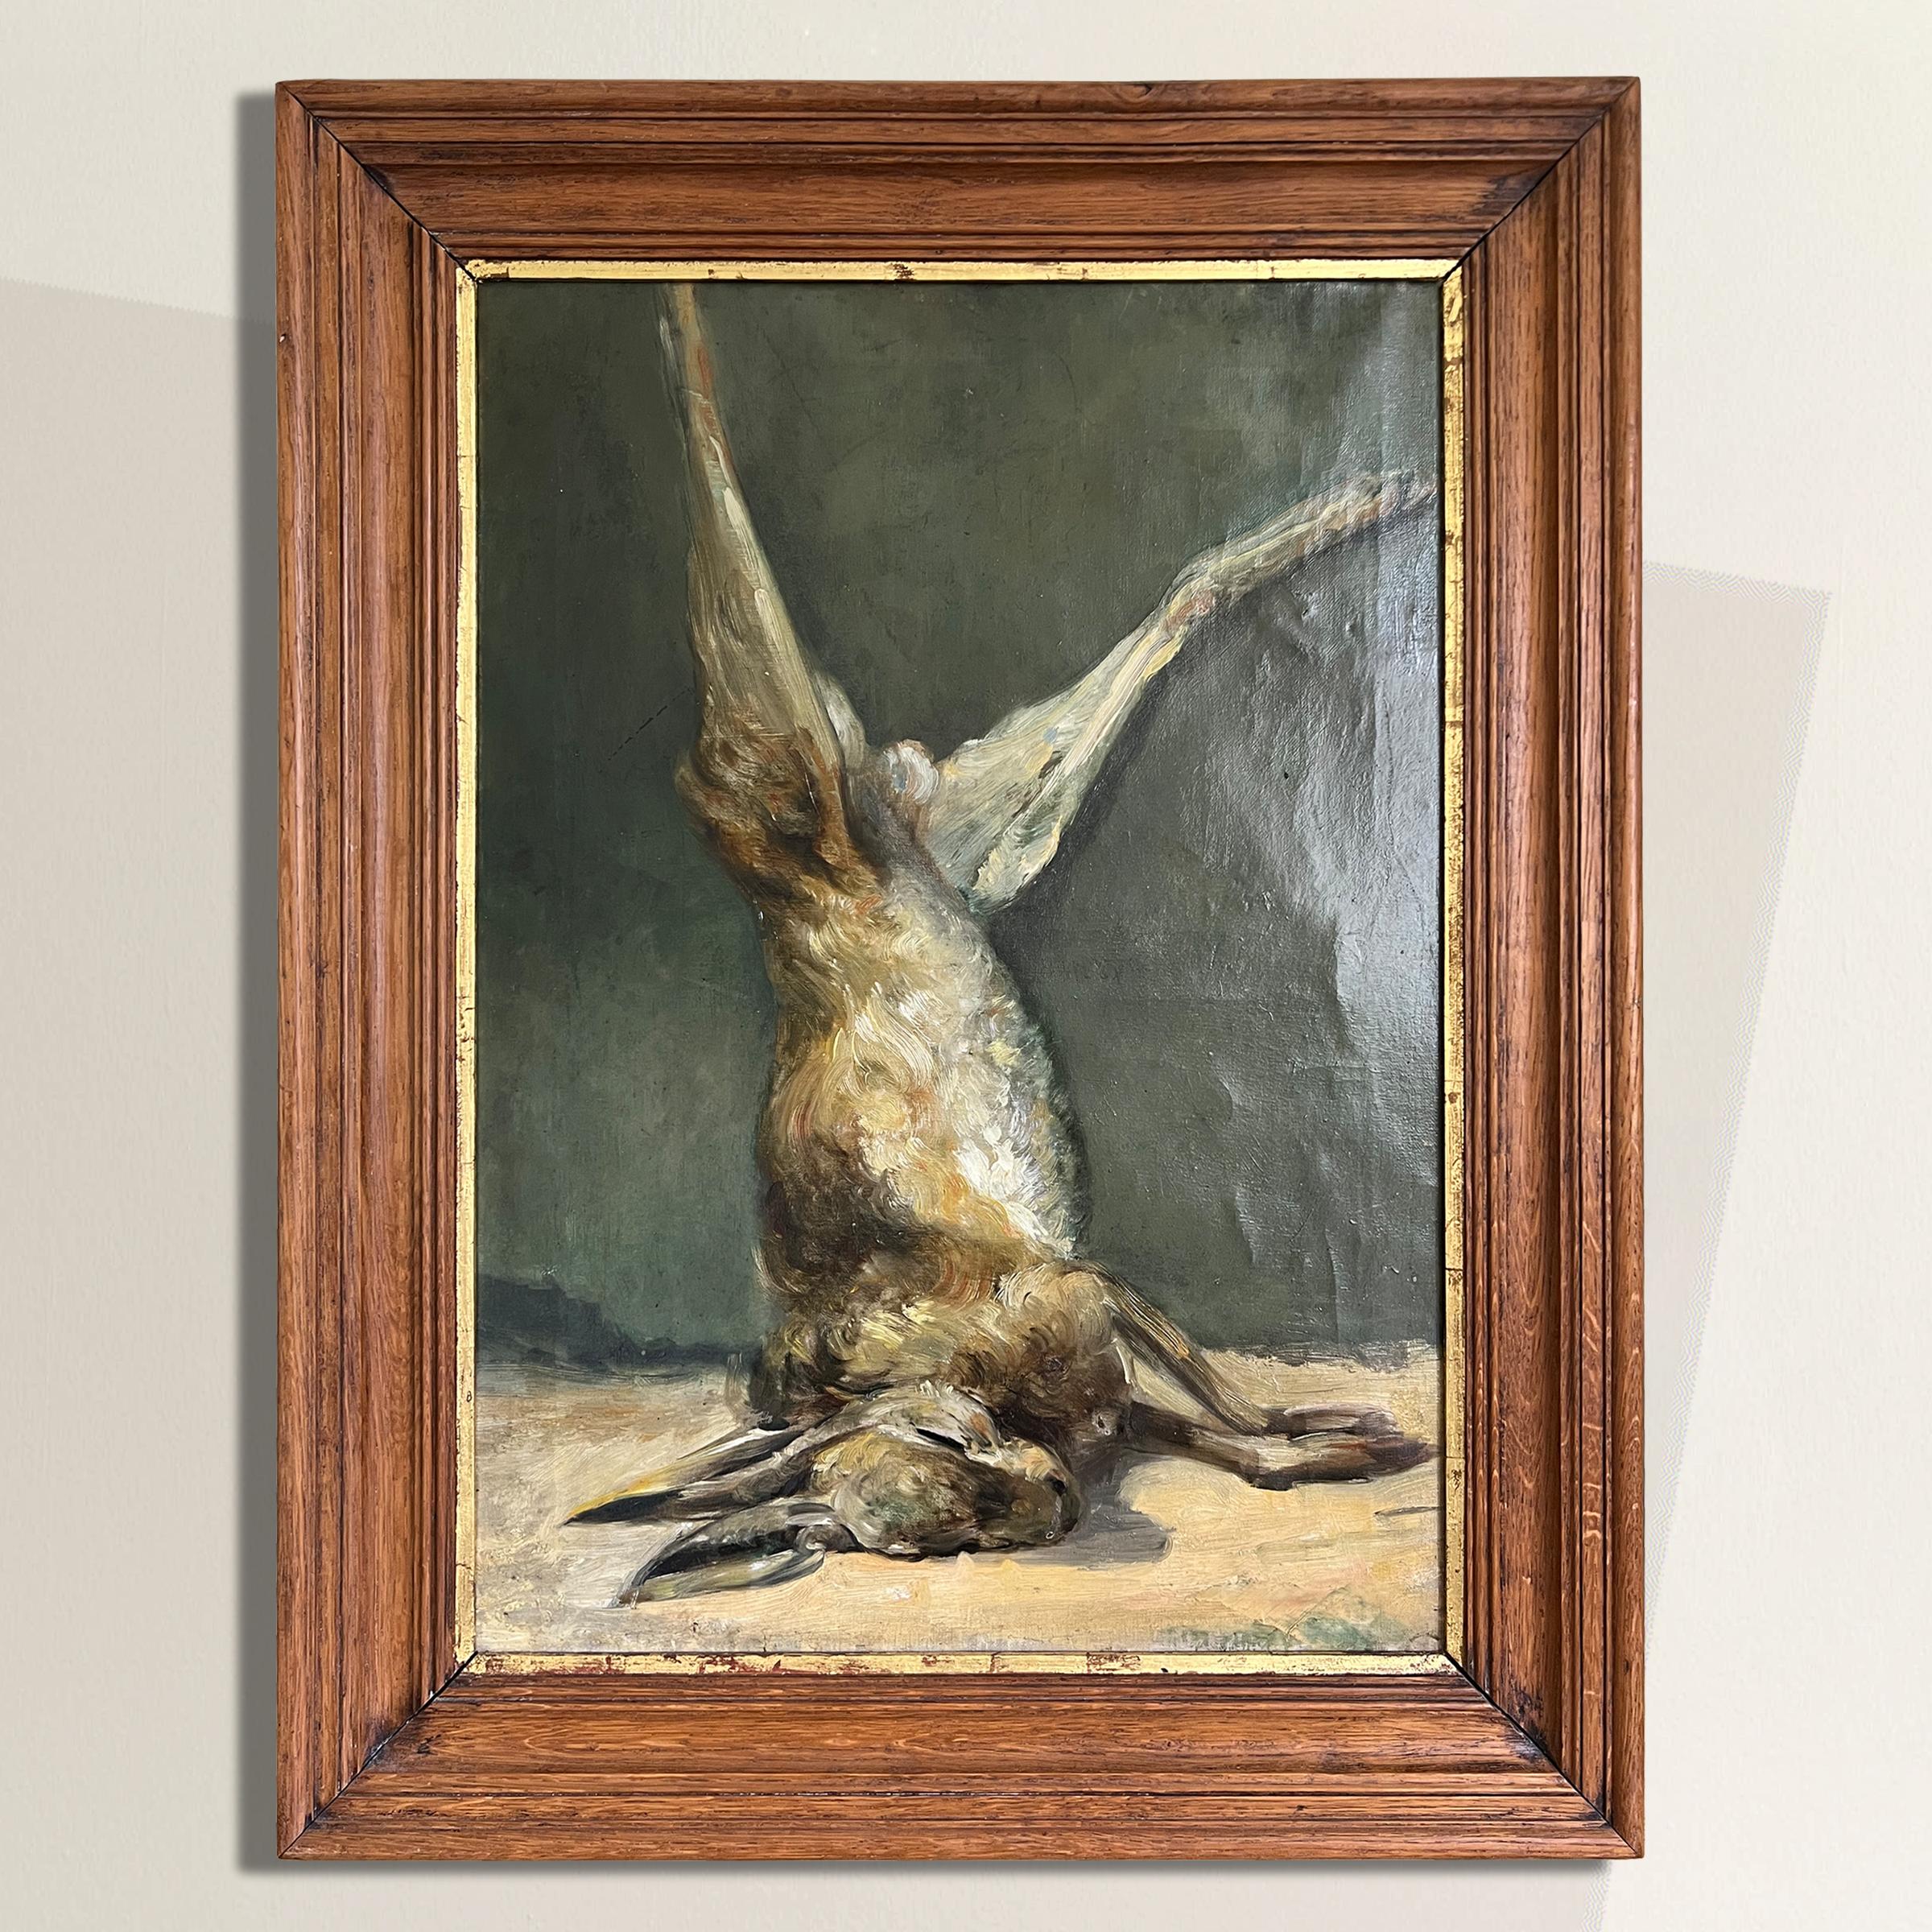 Une étonnante nature morte belge à l'huile sur lin du XIXe siècle représentant un trophée de chasse au lièvre, avec une incroyable attention aux détails, y compris l'attrait tactile de la fourrure du lièvre. La chasse était l'un des principaux